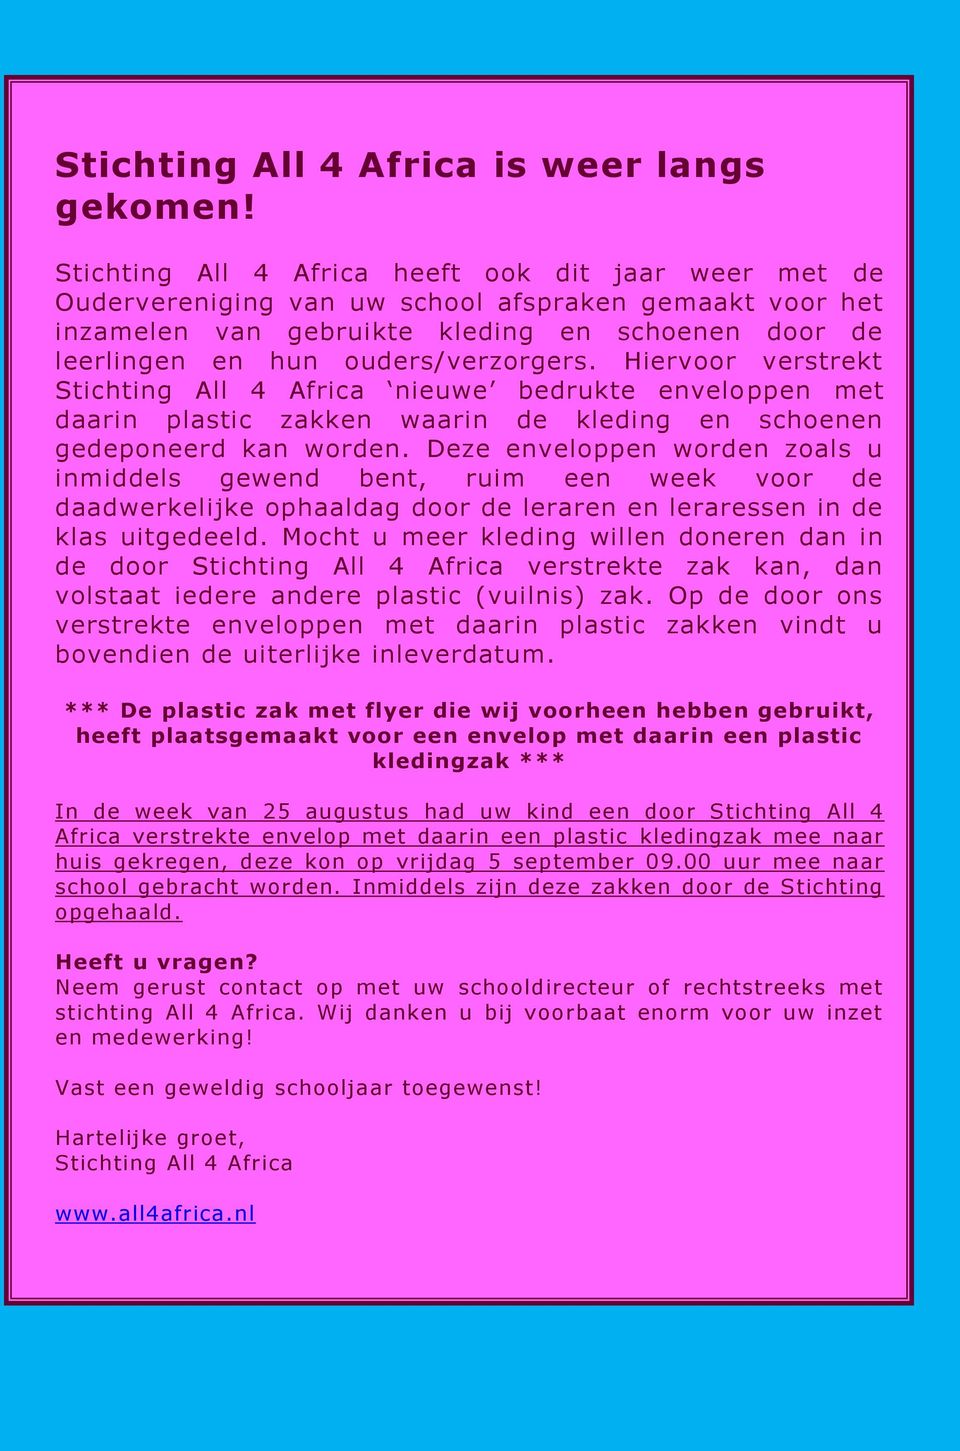 Hiervoor verstrekt Stichting All 4 Africa nieuwe bedrukte enveloppen met daarin plastic zakken waarin de kleding en schoenen gedeponeerd kan worden.